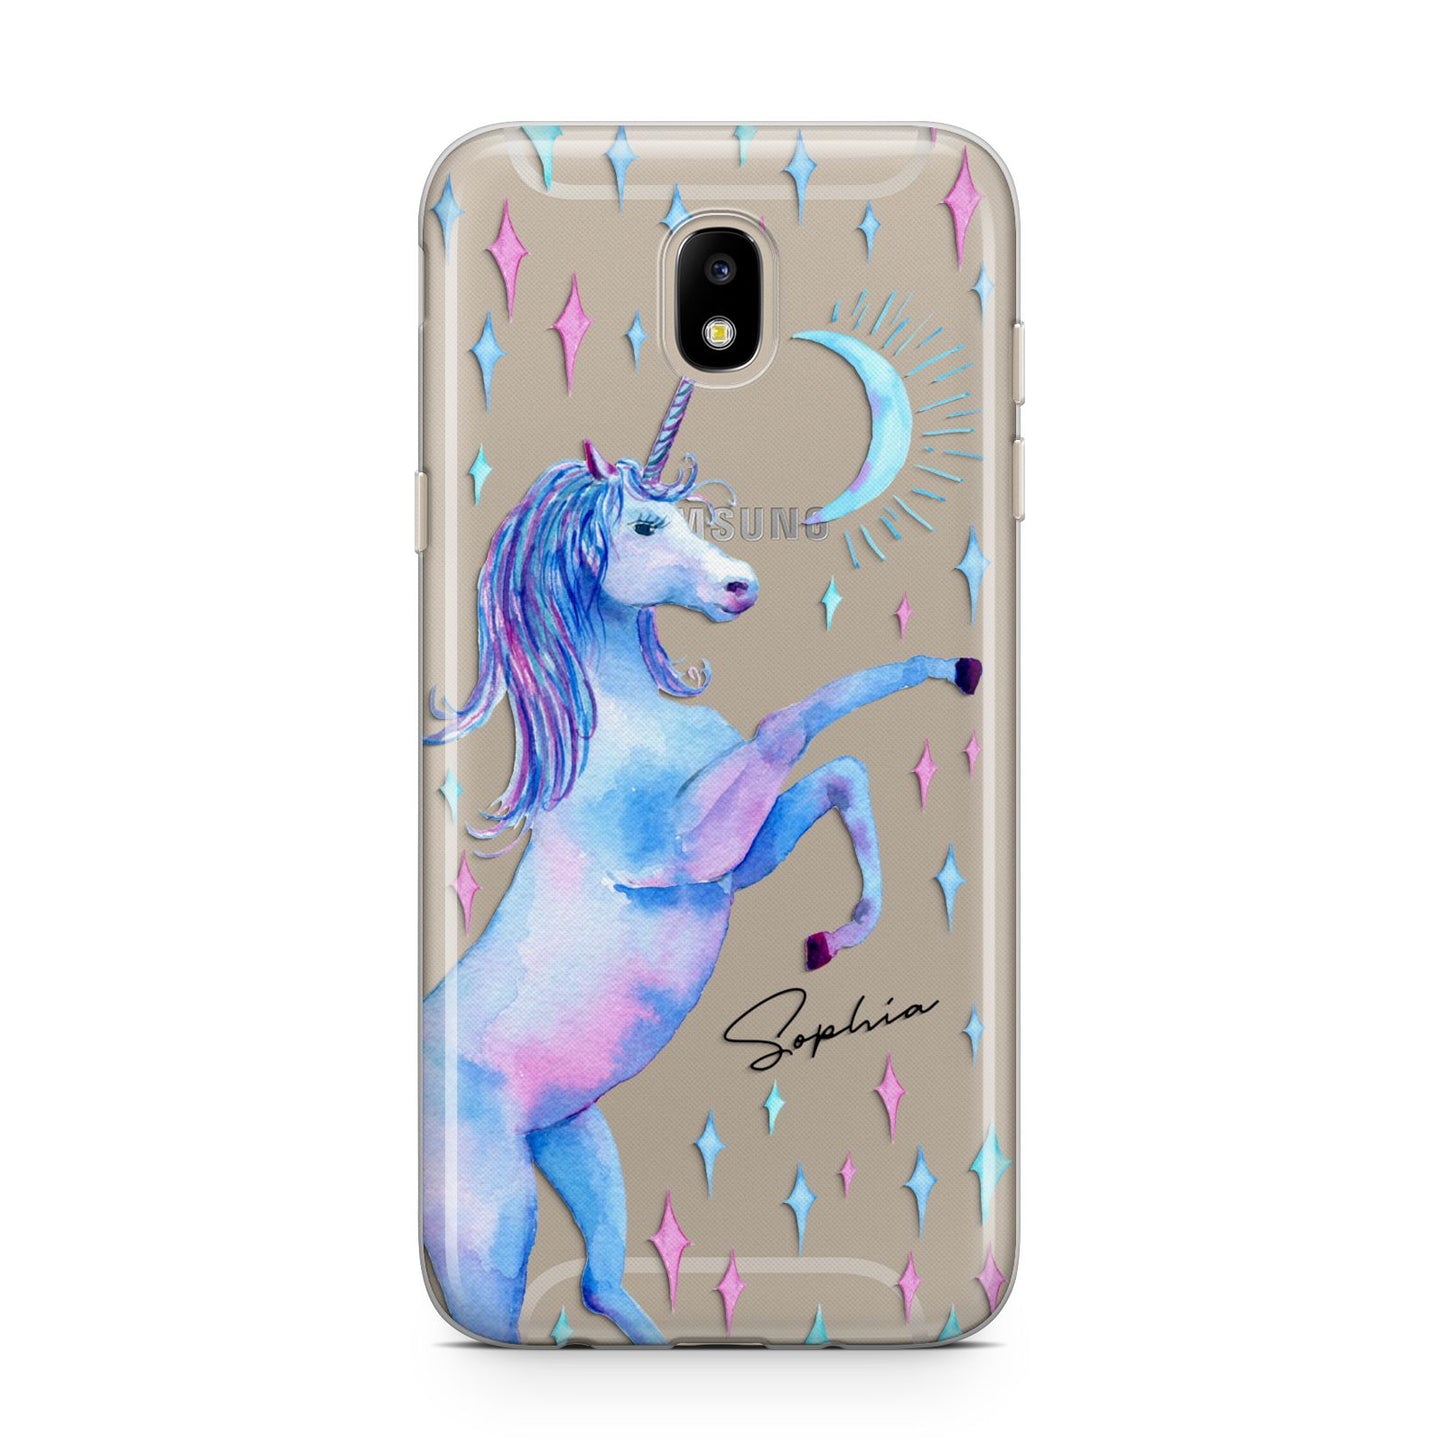 Personalised Unicorn Name Samsung J5 2017 Case